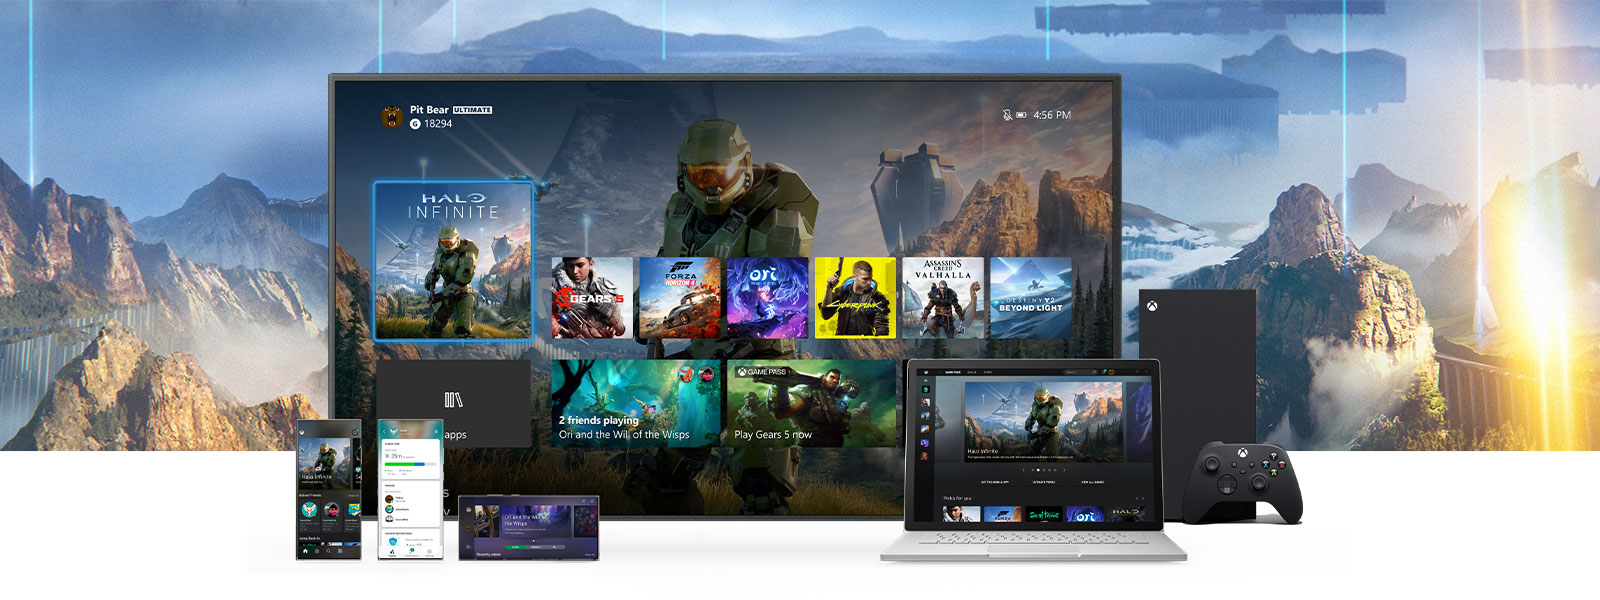 Bir Xbox Series X'in yanındaki bir TV'de Xbox panosu gösteriliyor. Bilgisayar ve mobil cihazlar gibi diğer cihazlar, TV'nin önünde duruyor.